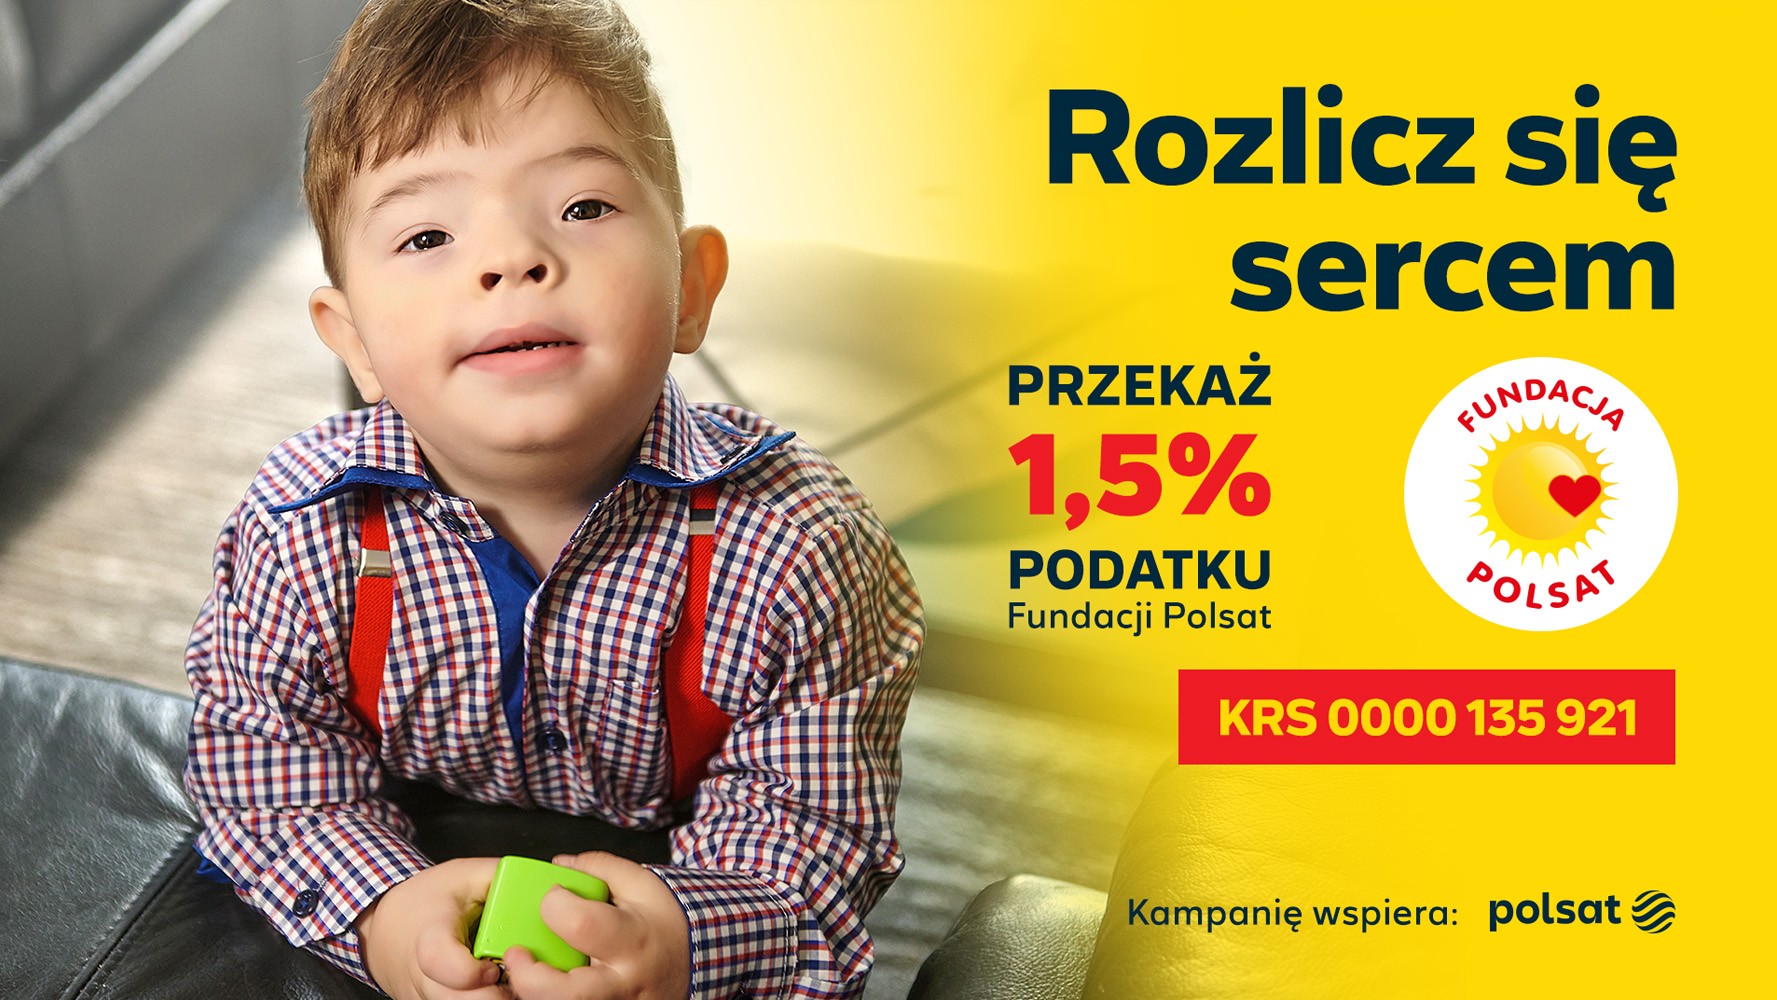 1,5 procent podatku na rzecz Fundacji Polsat. Jak pomóc?